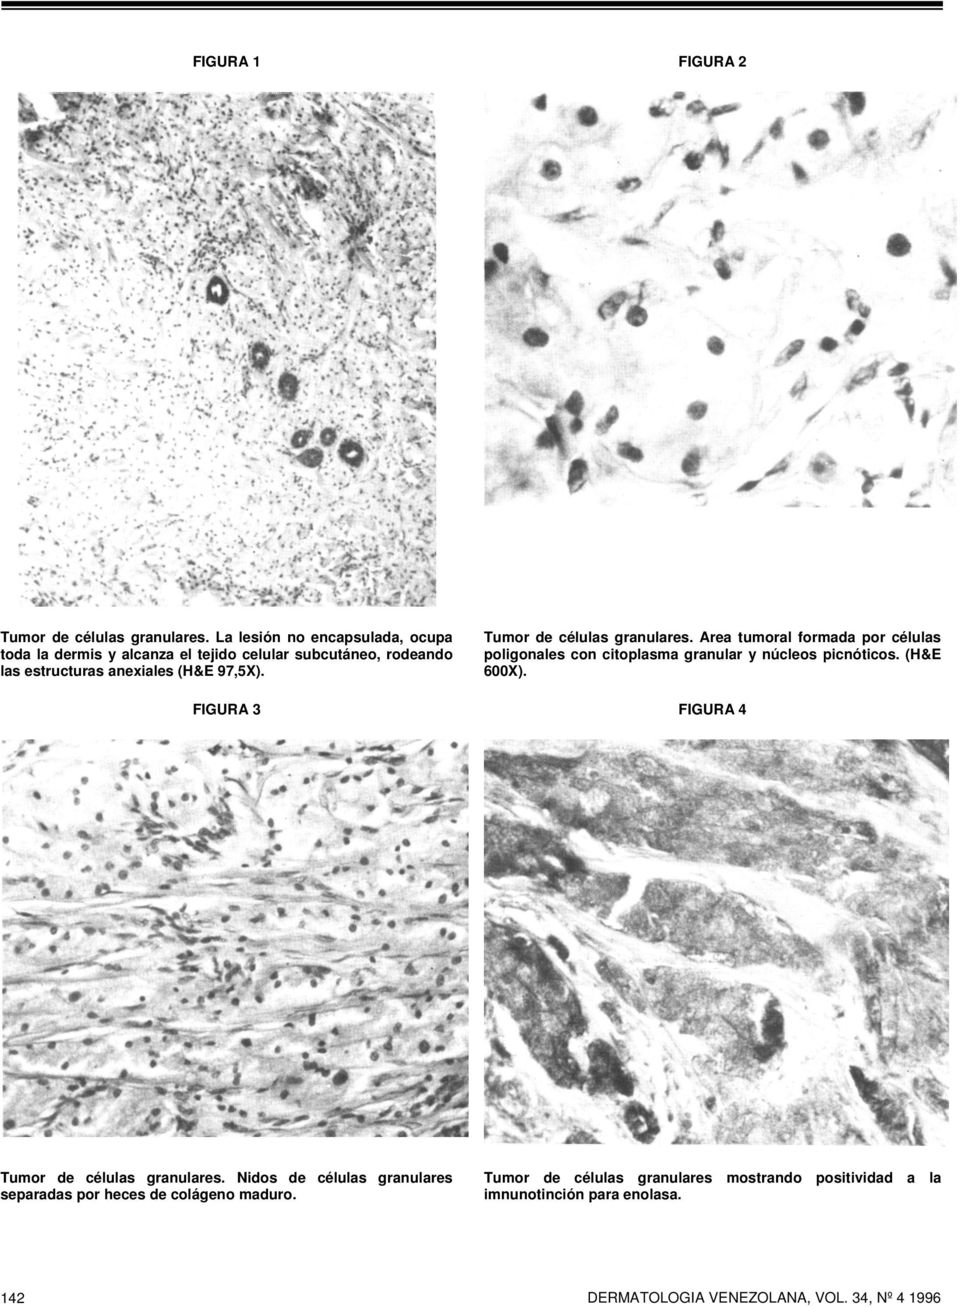 Tumor de células granulares. Area tumoral formada por células poligonales con citoplasma granular y núcleos picnóticos. (H&E 600X).